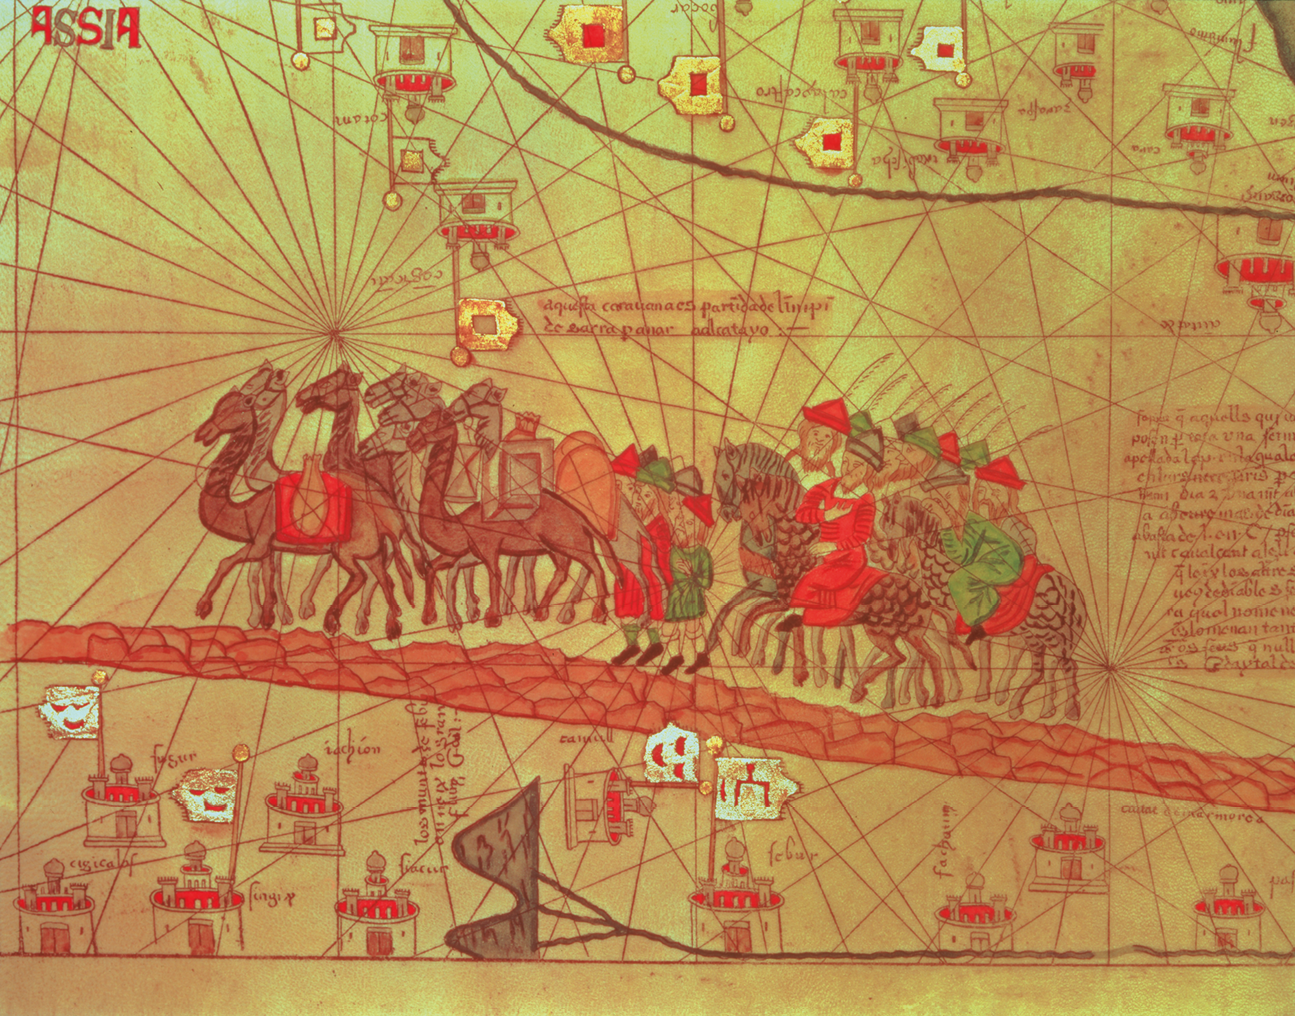 Mapa. Destaque de atlas. Centralizado, homens, usando chapéus e túnicas coloridas, estão montados em camelos. Acima e abaixo, há diversas marcações com bandeiras e castelos. Ao fundo, diversas linhas tracejadas.